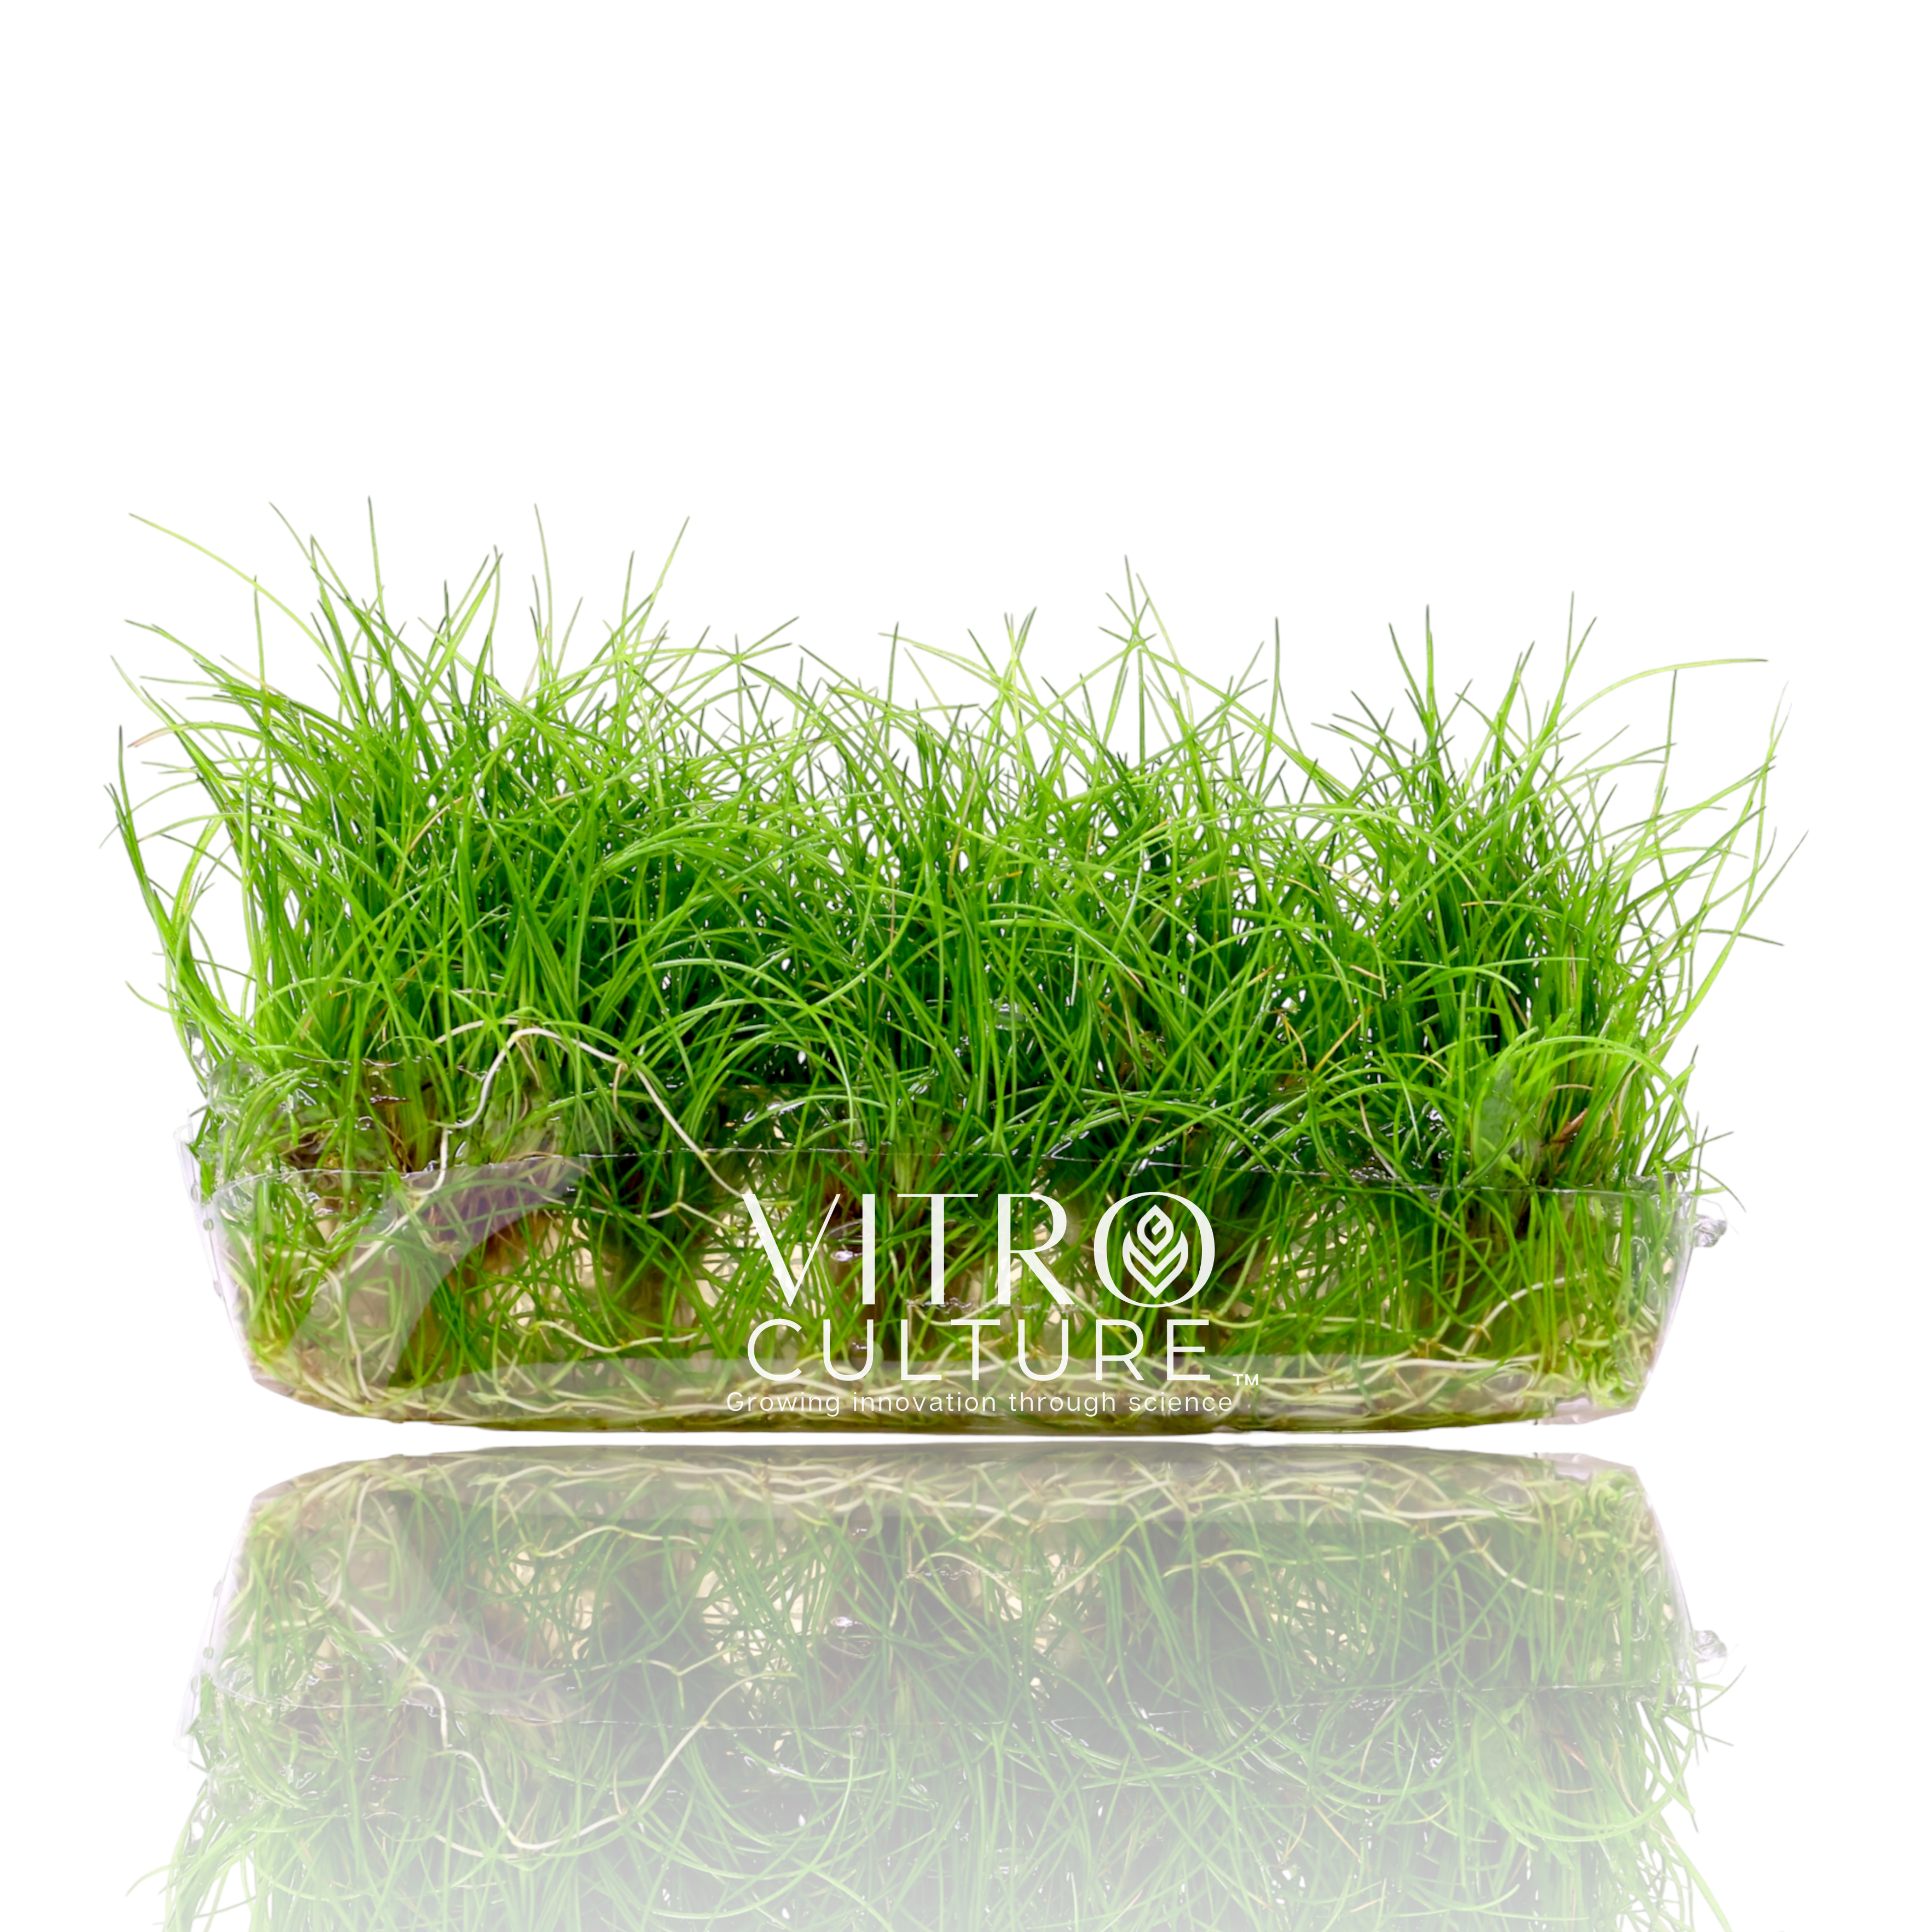 Eleocharis acicularis 'Mini' Dwarf Hairgrass Mini Vitro Culture Foreground Carpet Aquarium Plants